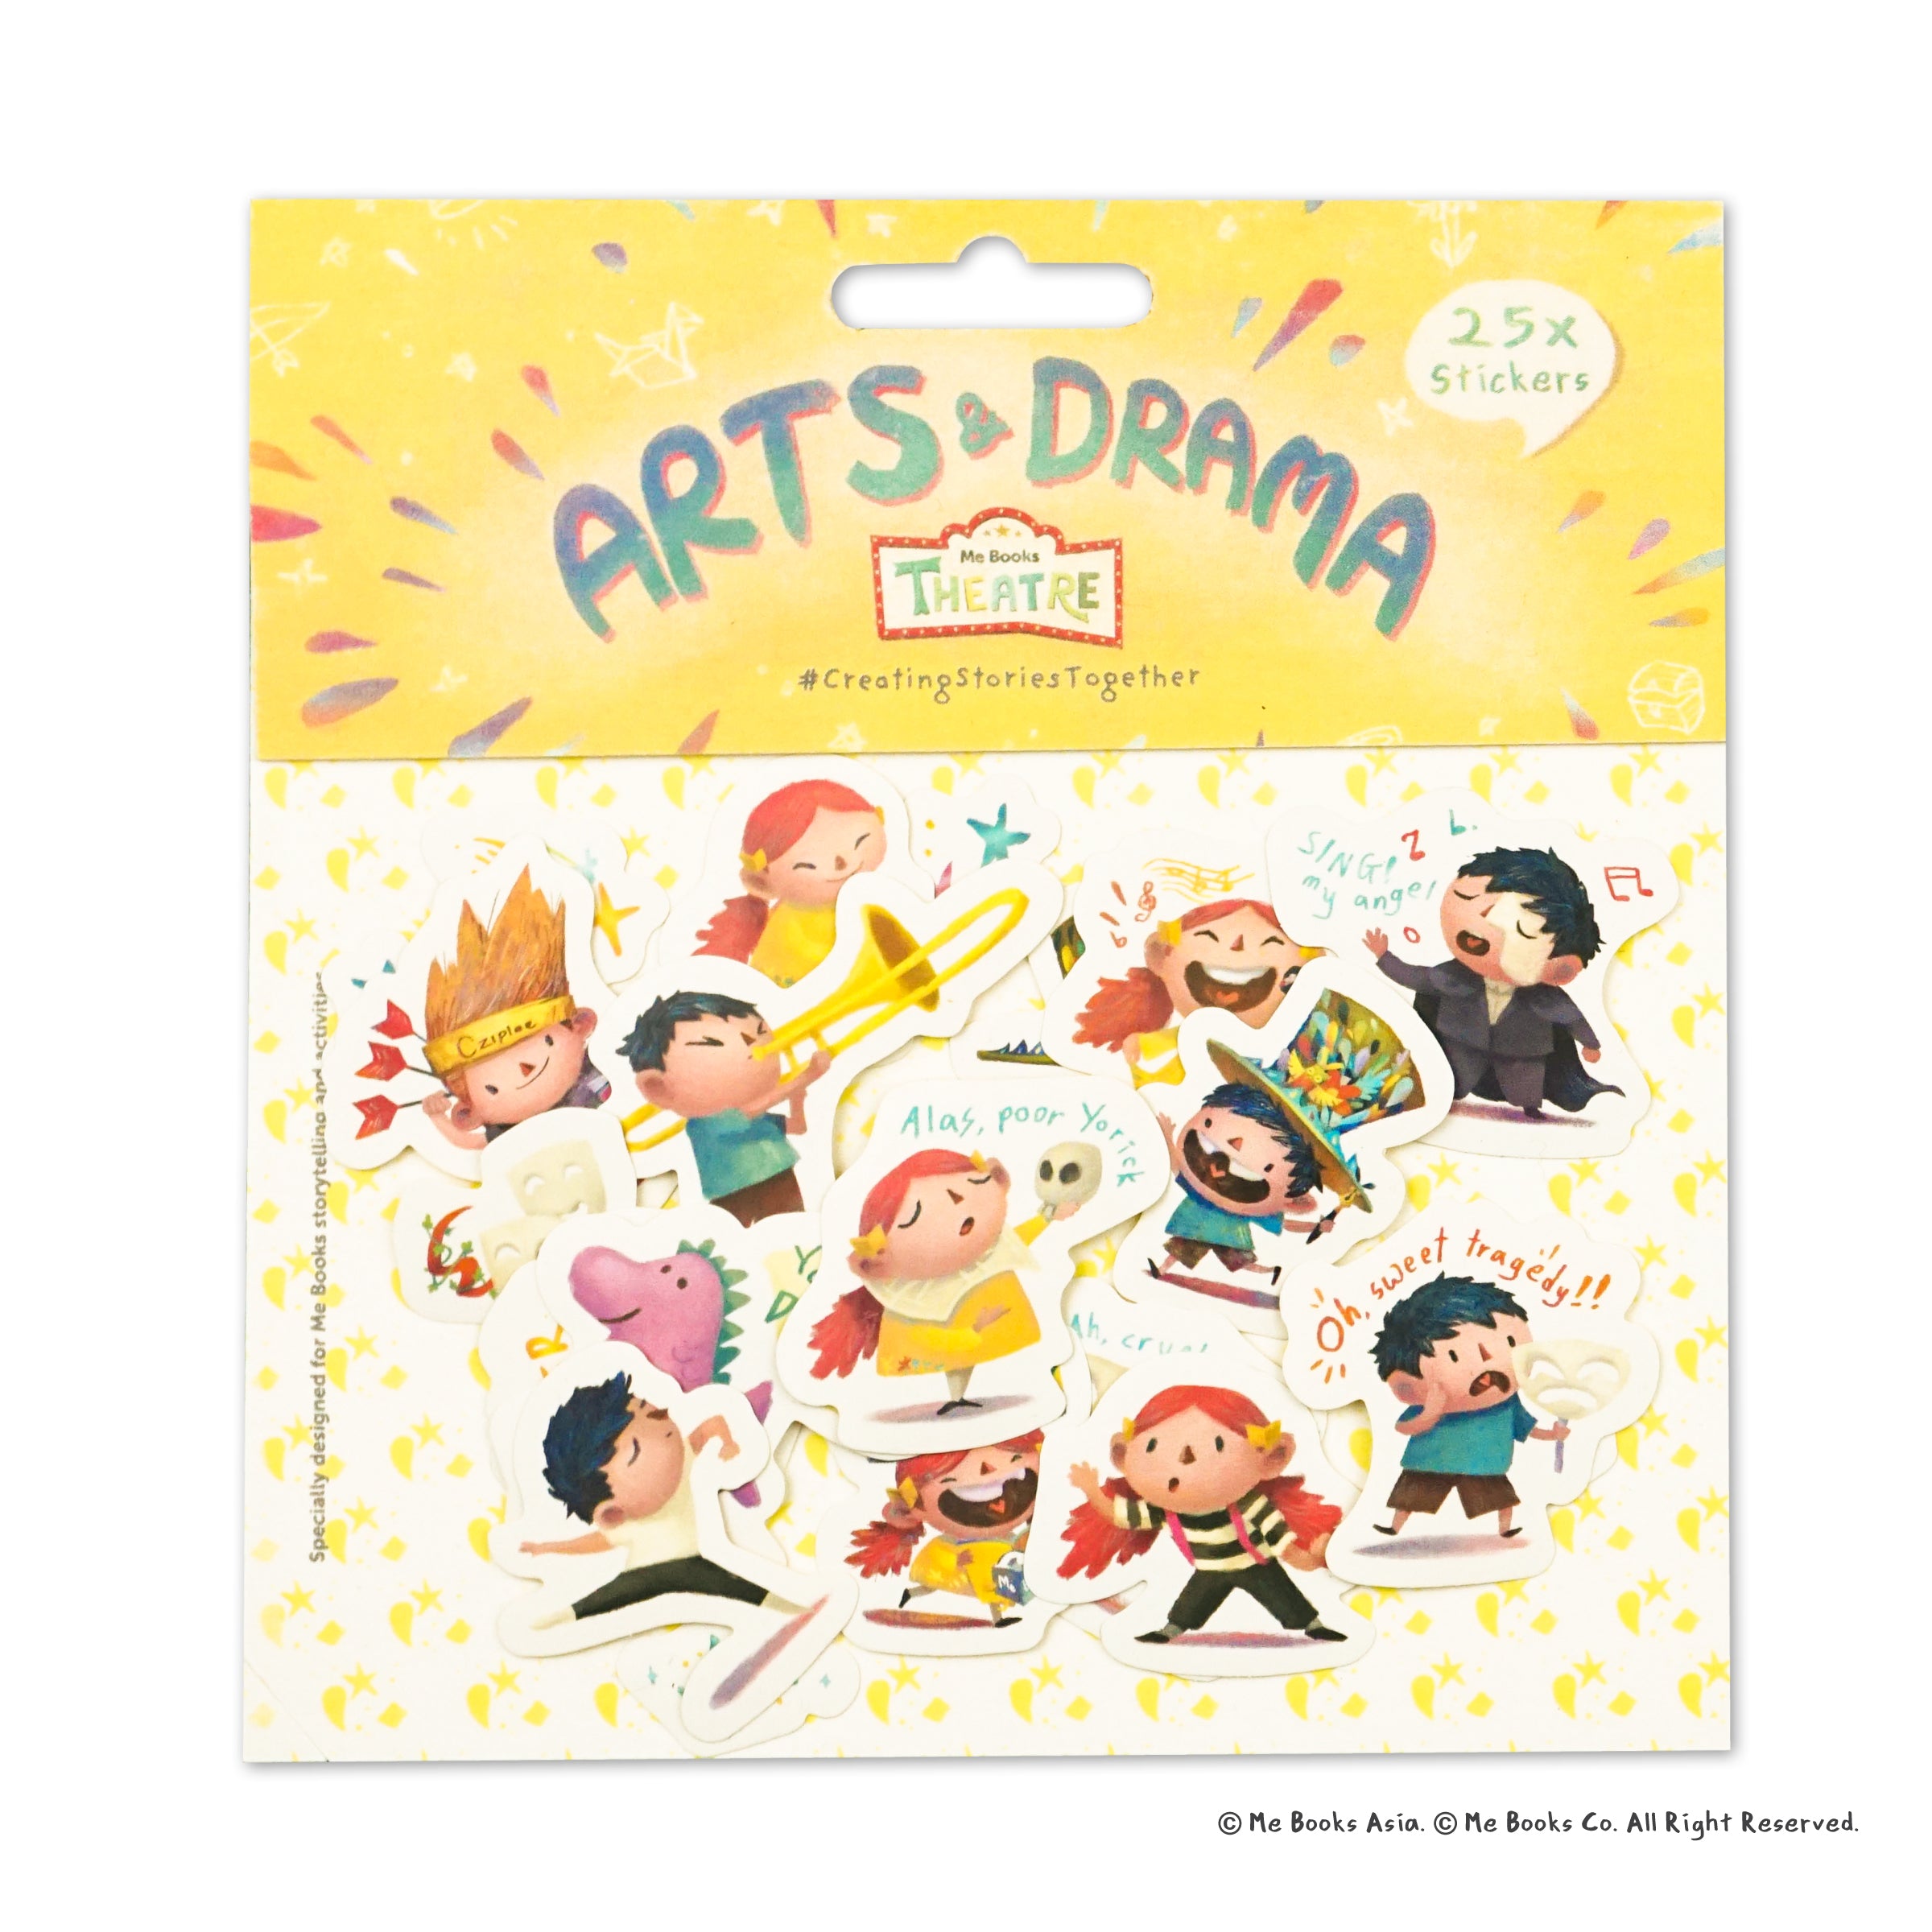 Me Books Theatre Stickers: Arts & Drama - Me Books Asia Store